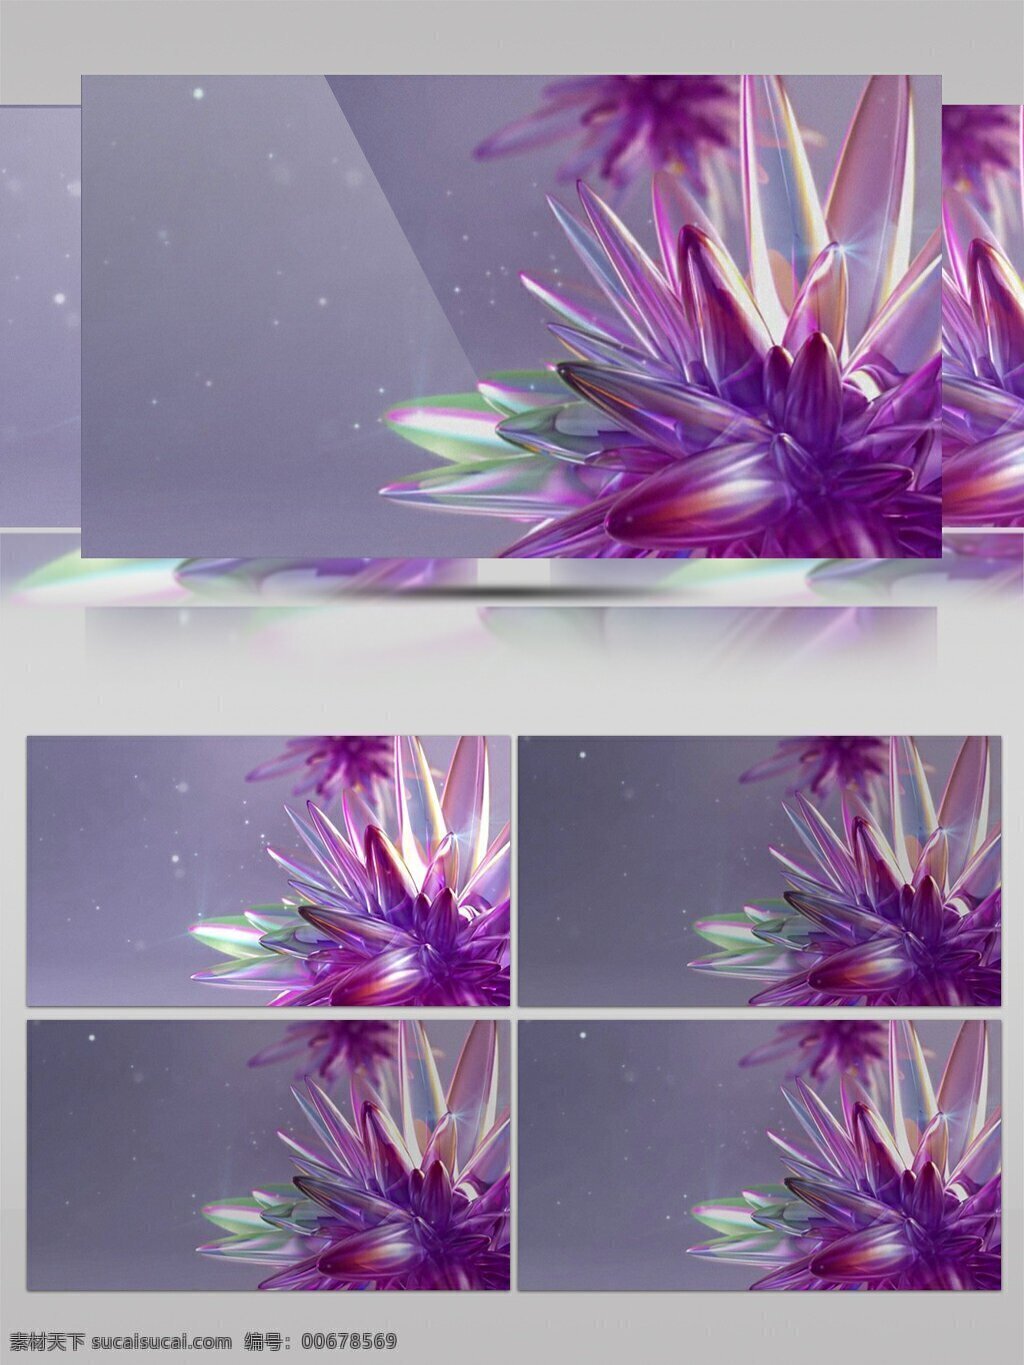 简约 紫色 唯美 鲜花 动感 视频 视频素材 动态视频素材 花朵 美丽 灿烂 高清视频素材 艳丽